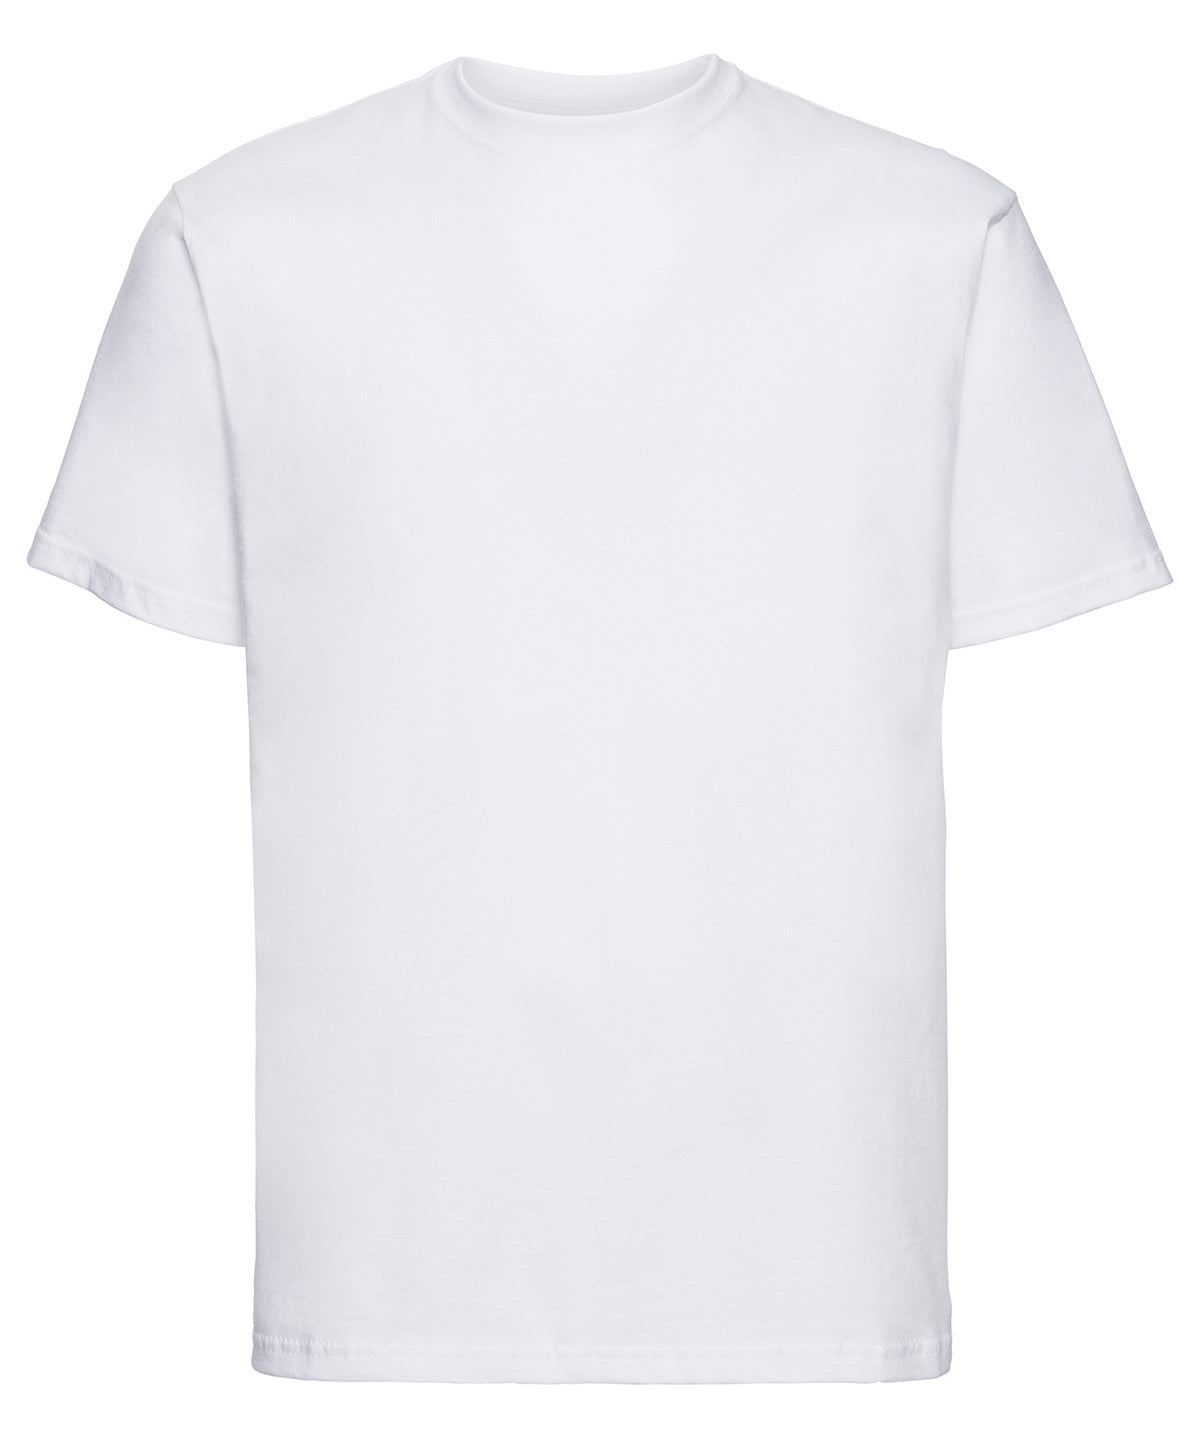 PE T-Shirt - Plain - White